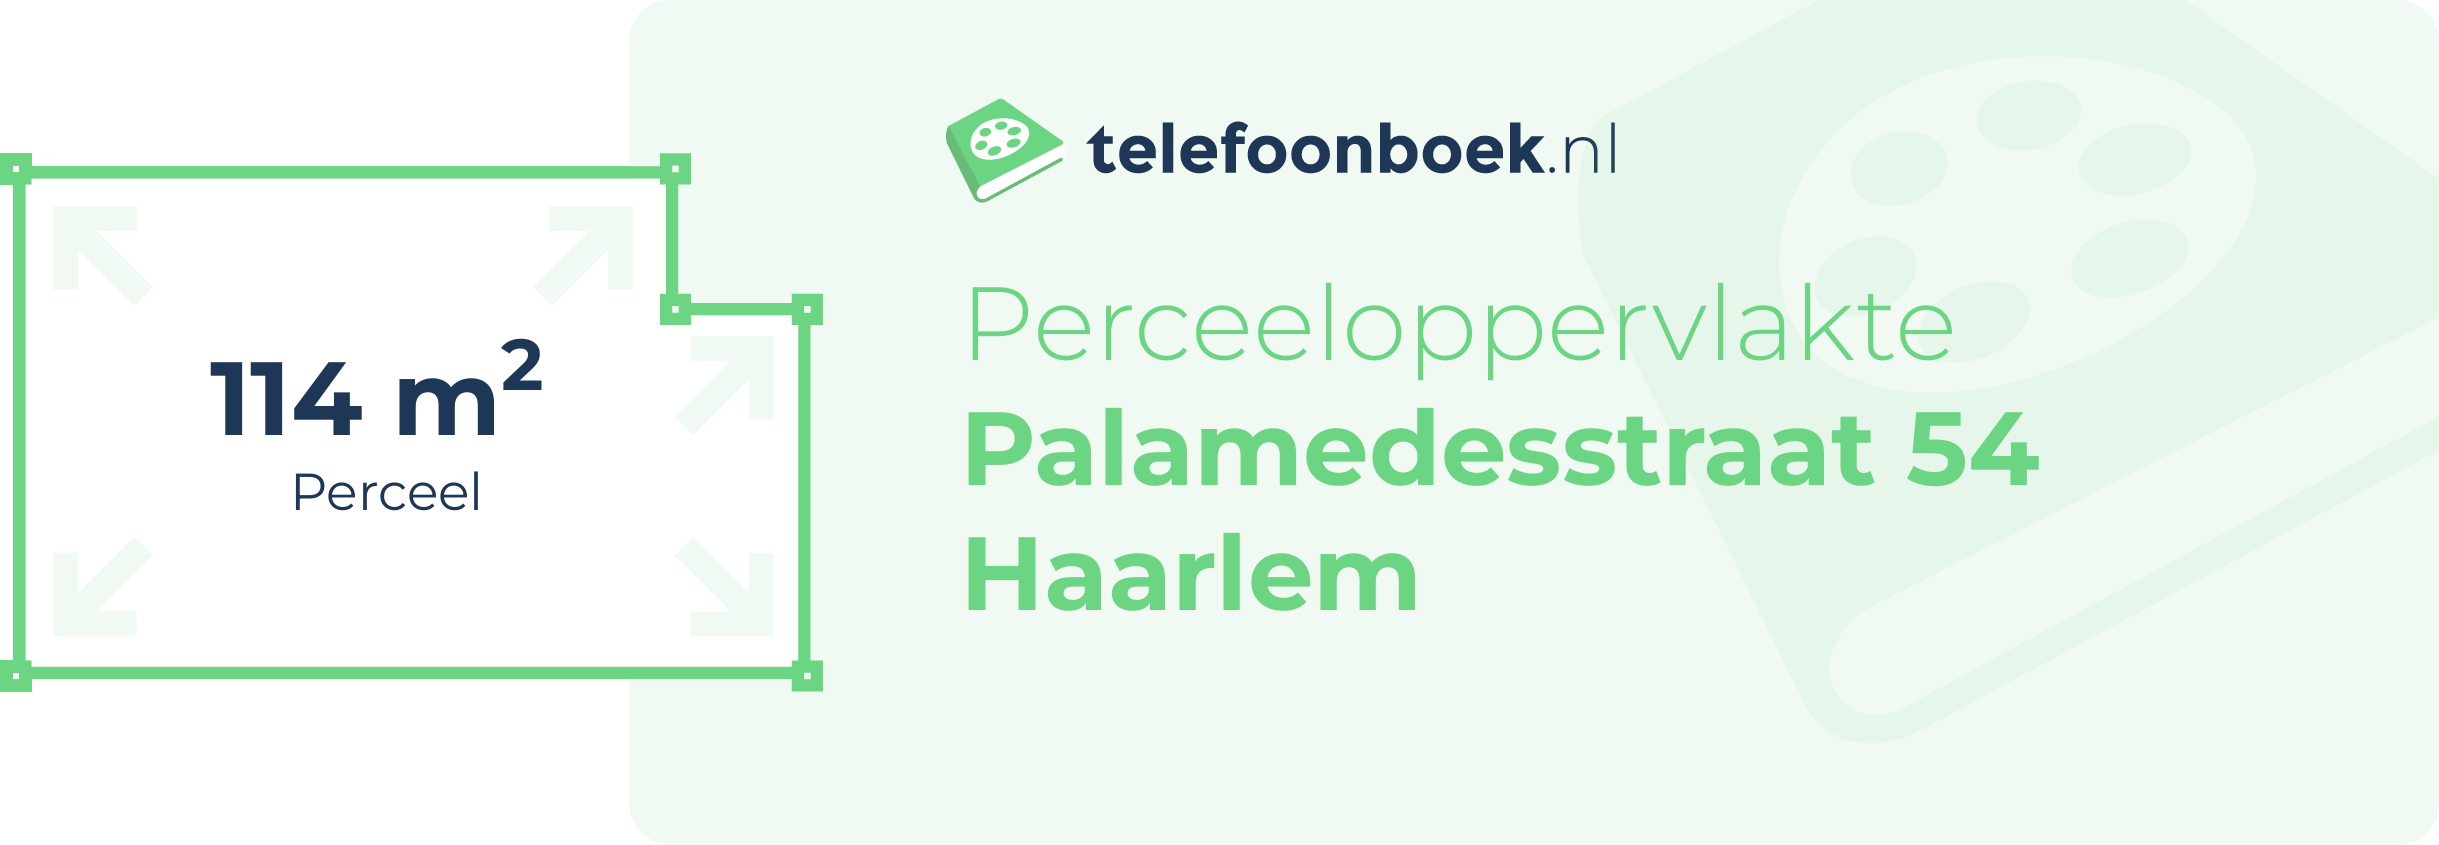 Perceeloppervlakte Palamedesstraat 54 Haarlem